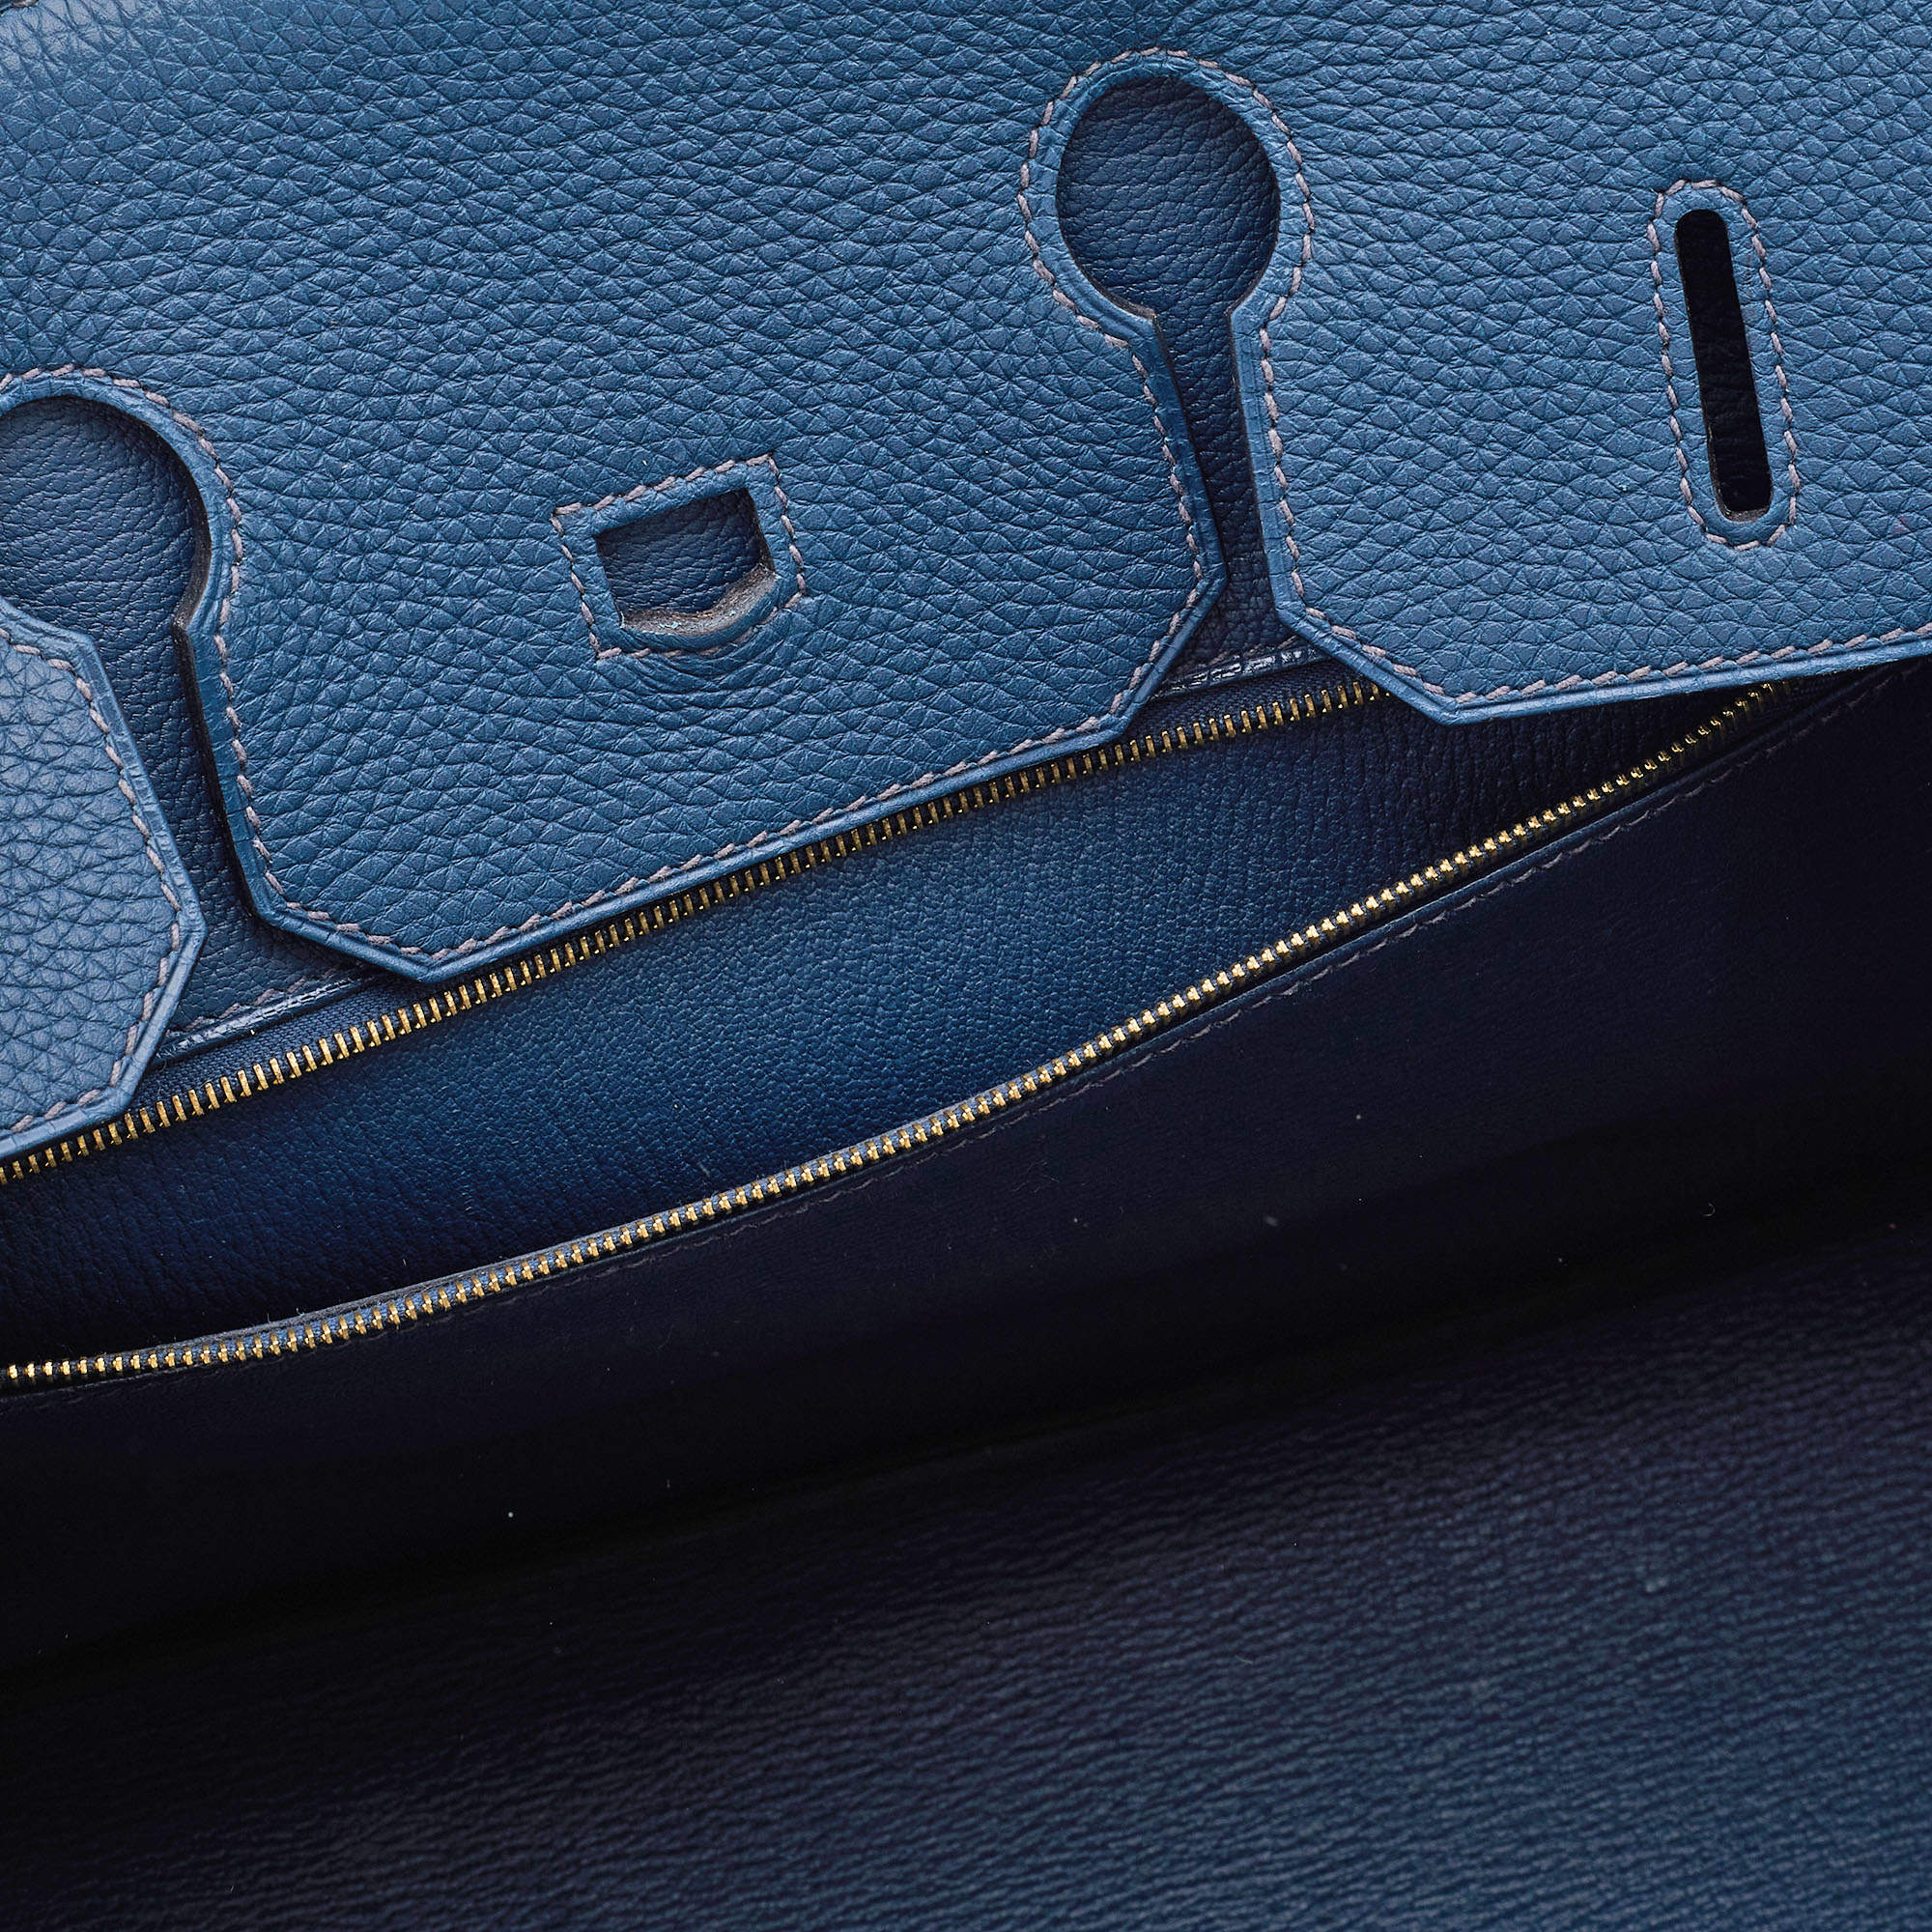 Hermès Limited Edition 50cm Bleu de Prusse Togo Leather Endless, Lot  #58005